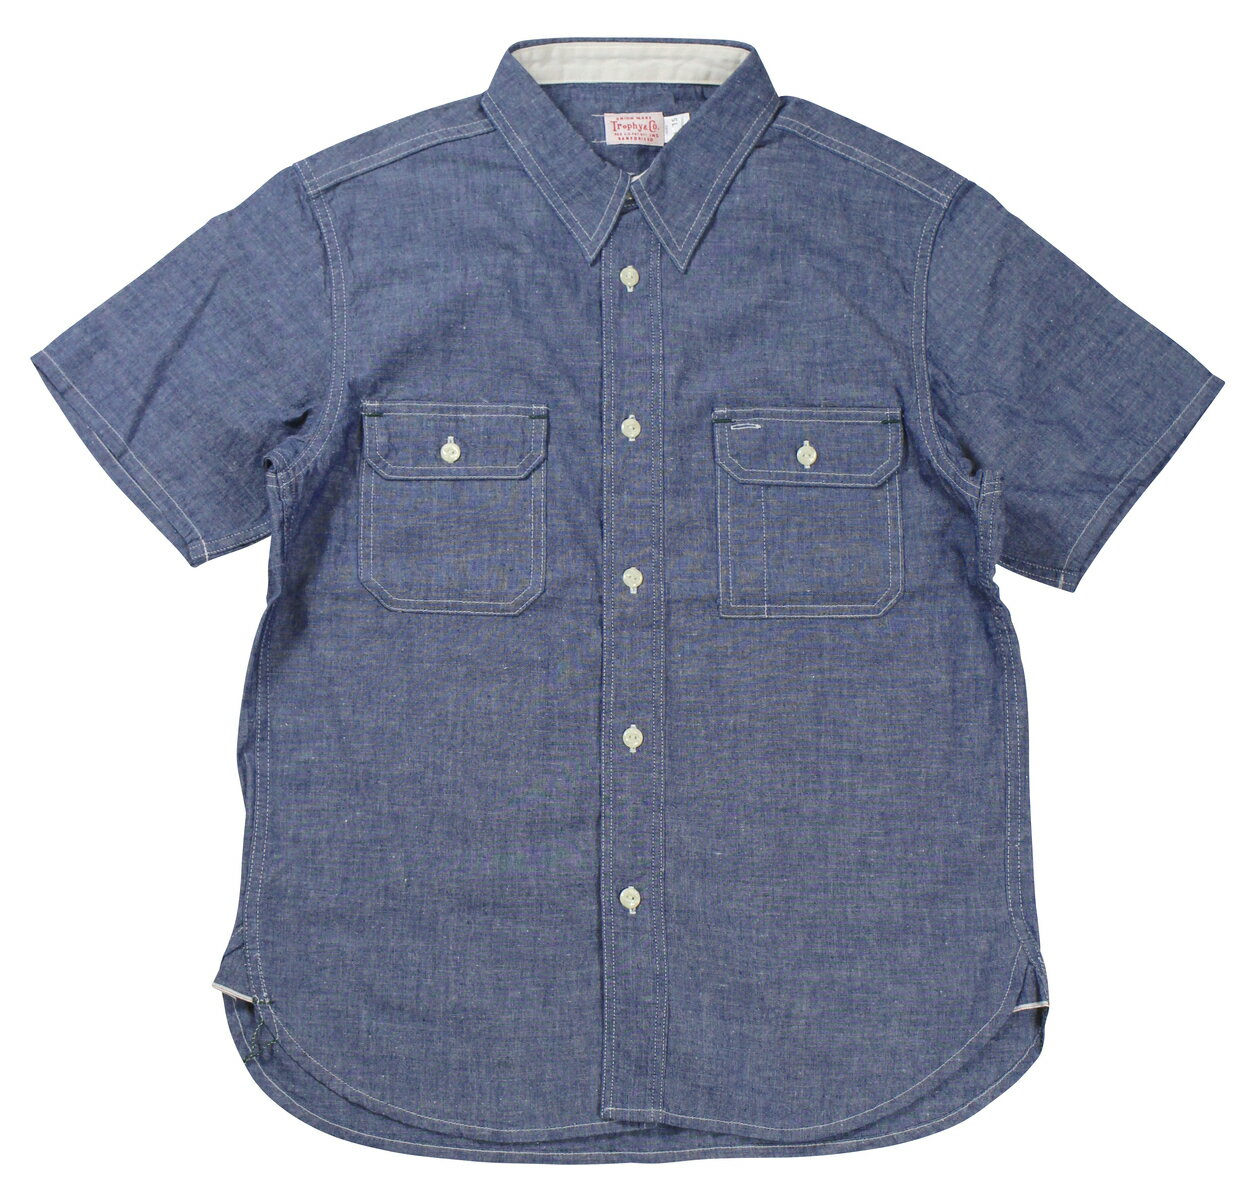 TROPHY CLOTHING [-Harvest S/S Shirt- Indigo size.14,15,16,17,18]